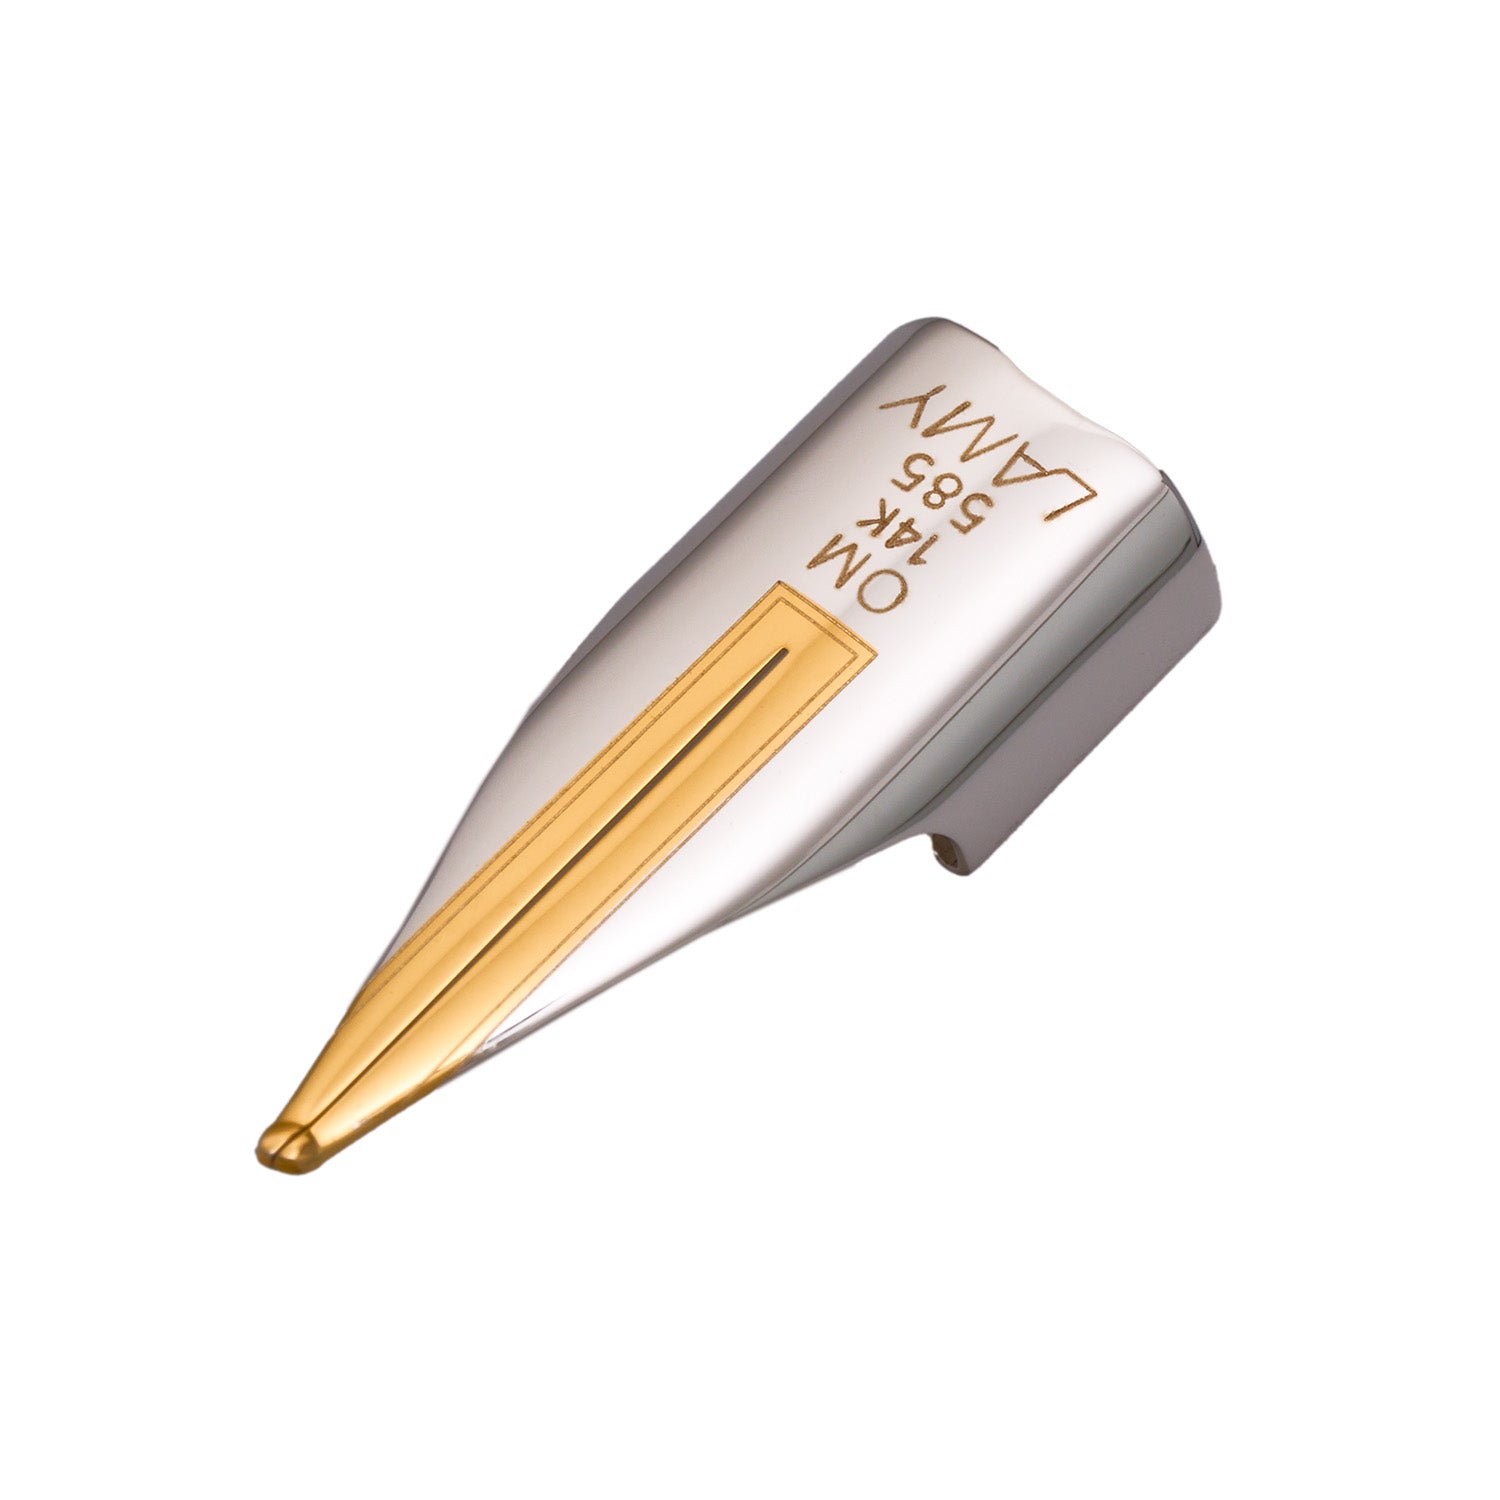 Lamy Z56 14k gold imporium fountain pen nib OM Oblique Medium made in Germany